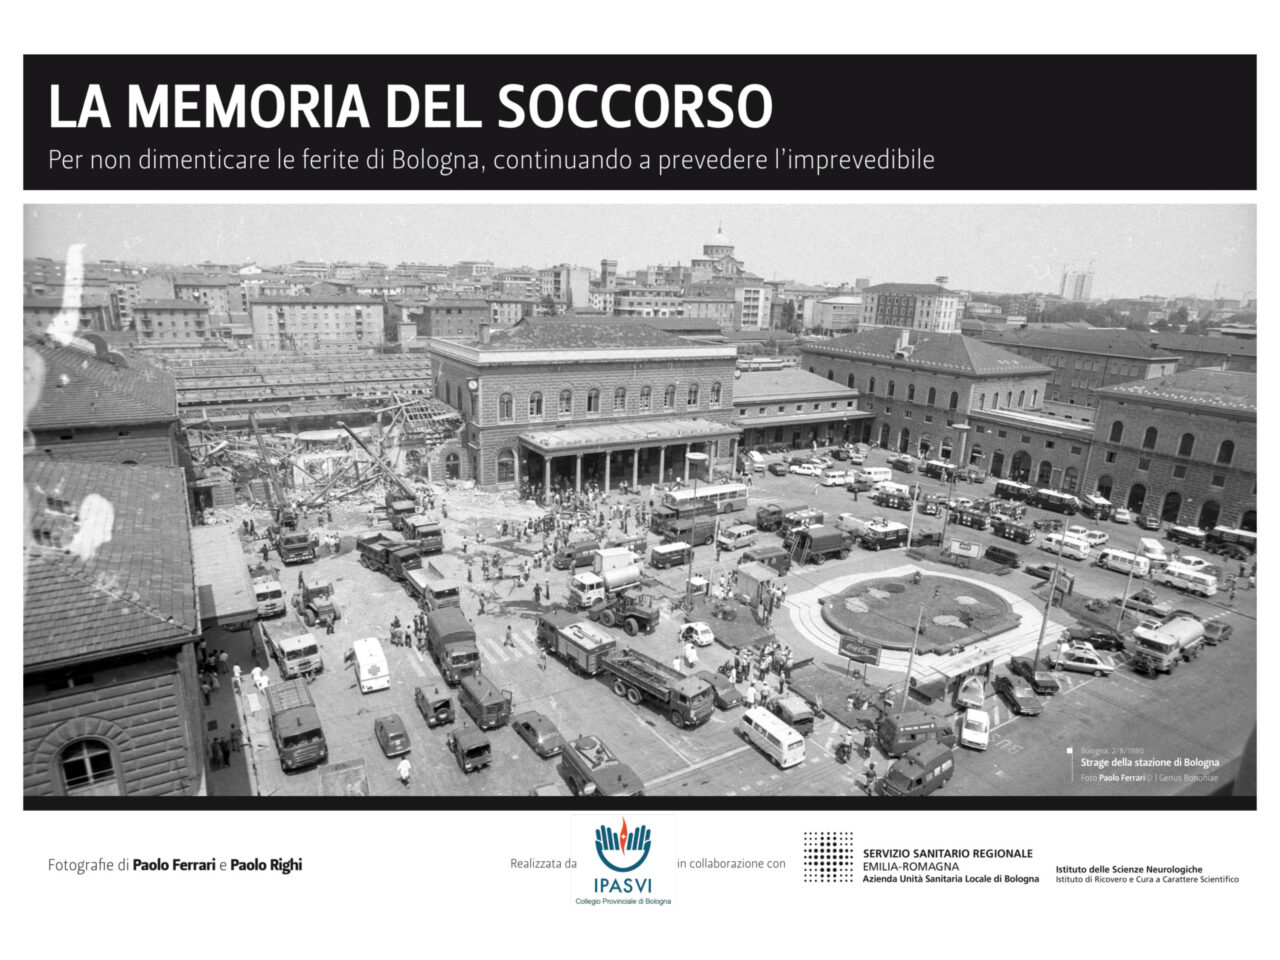 Mostra fotografica “La memoria del soccorso” presso Palazzo D’Accursio dal 1 al 24 Agosto